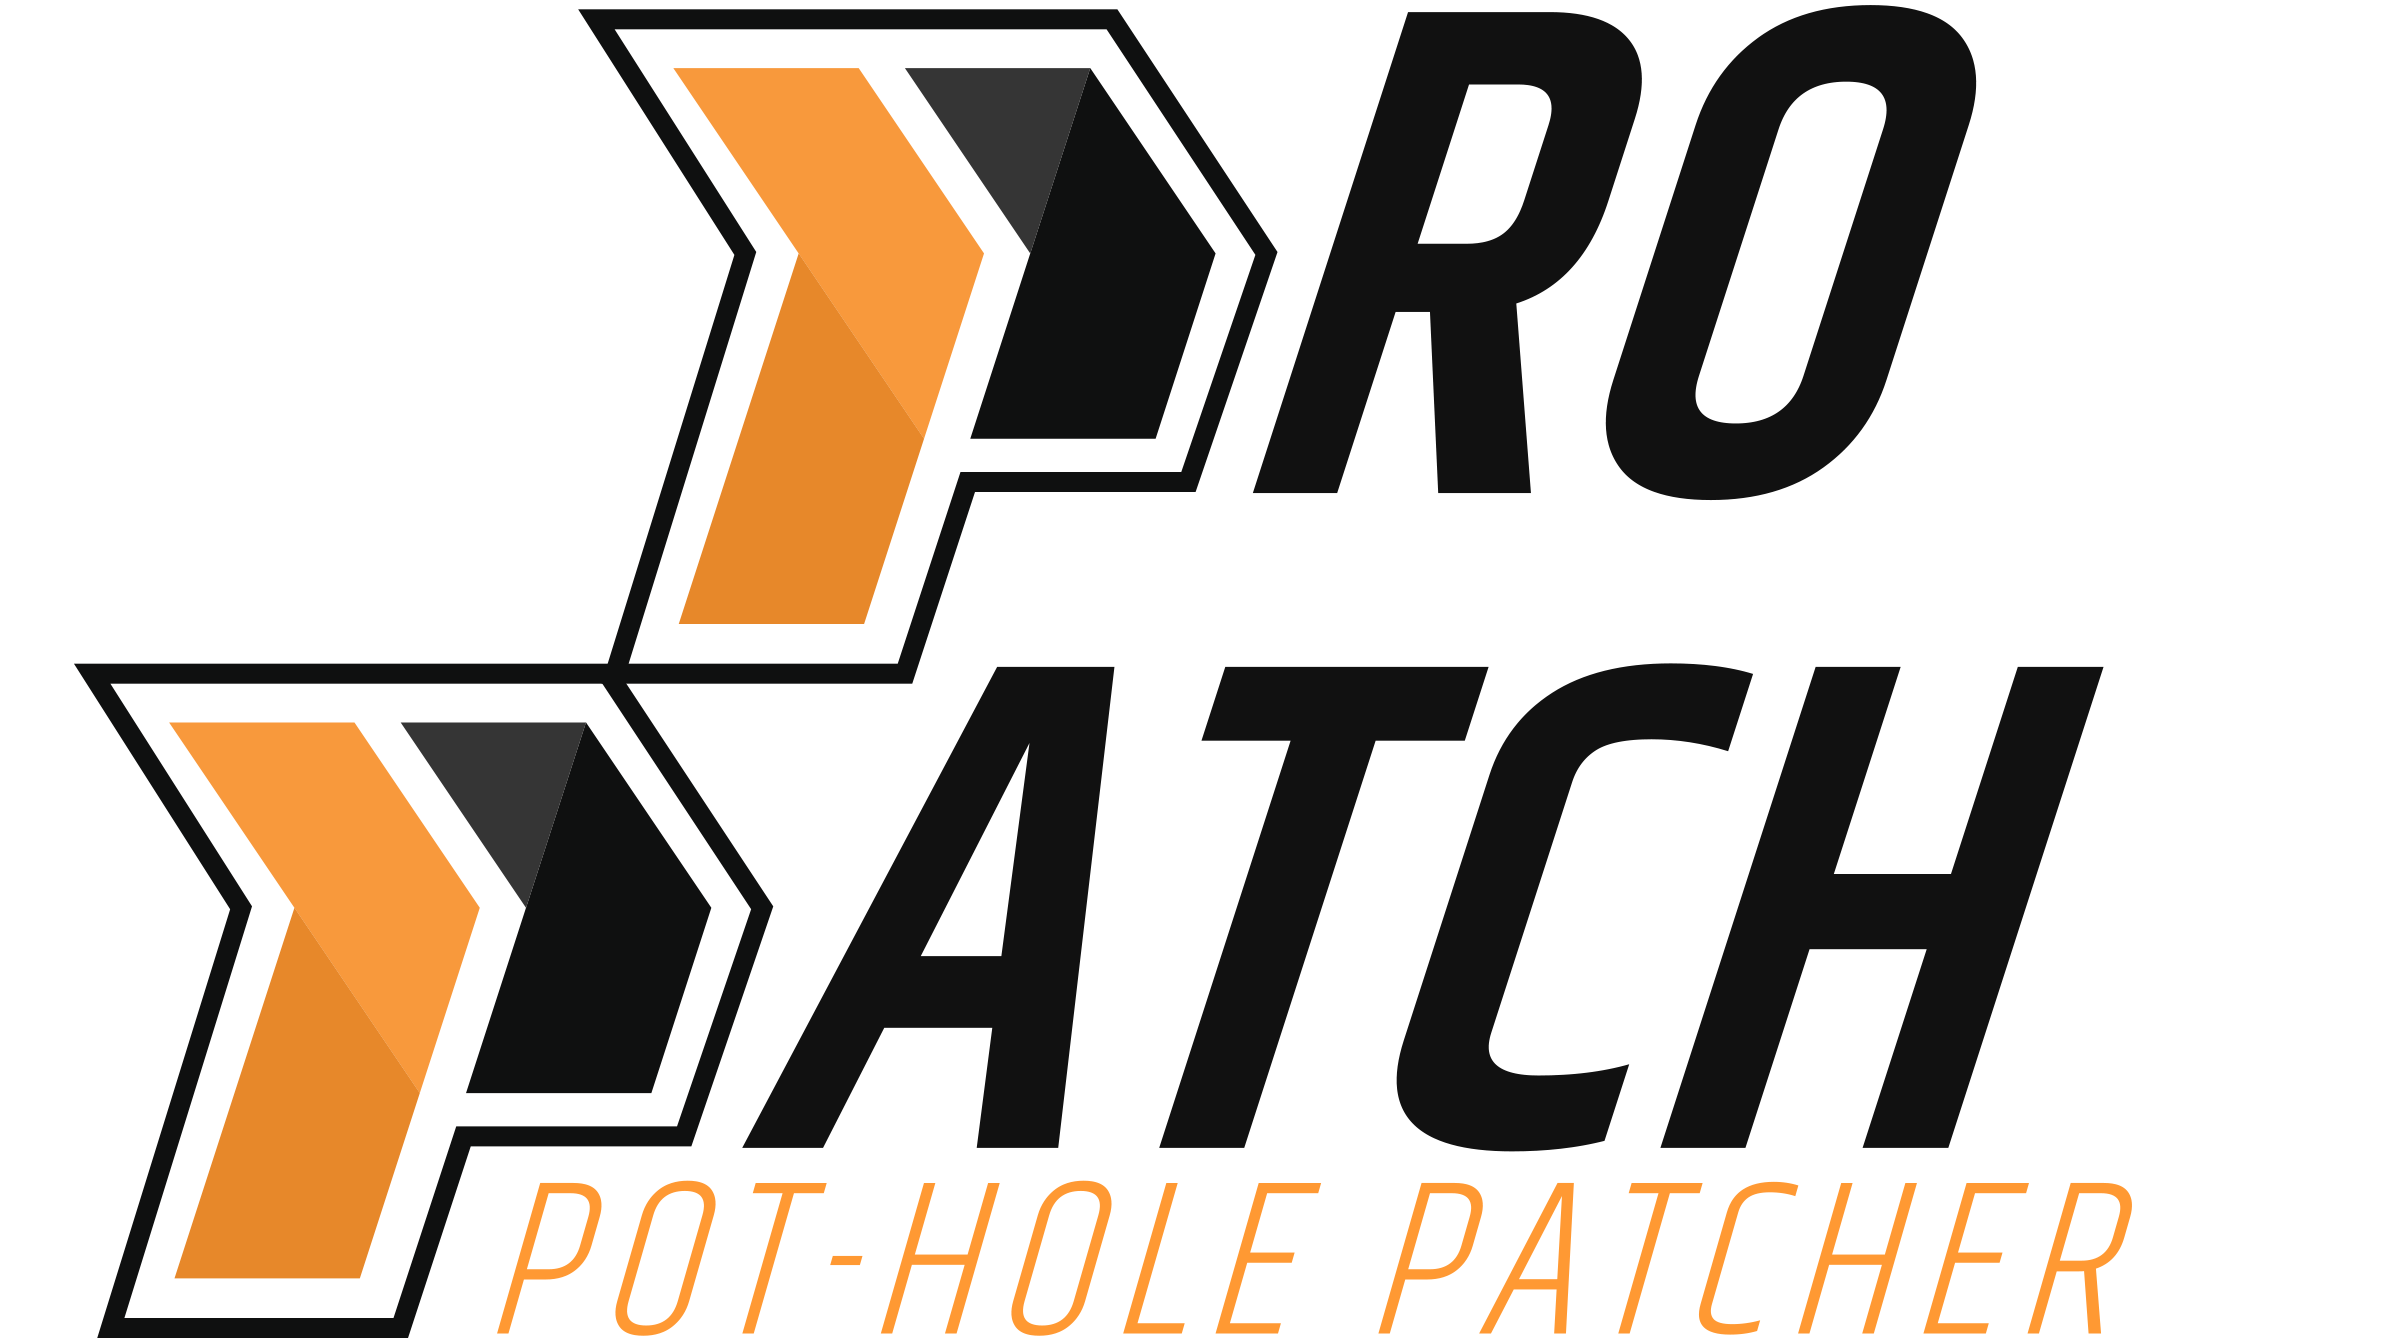 Pro Patch Pot Hole Patcher